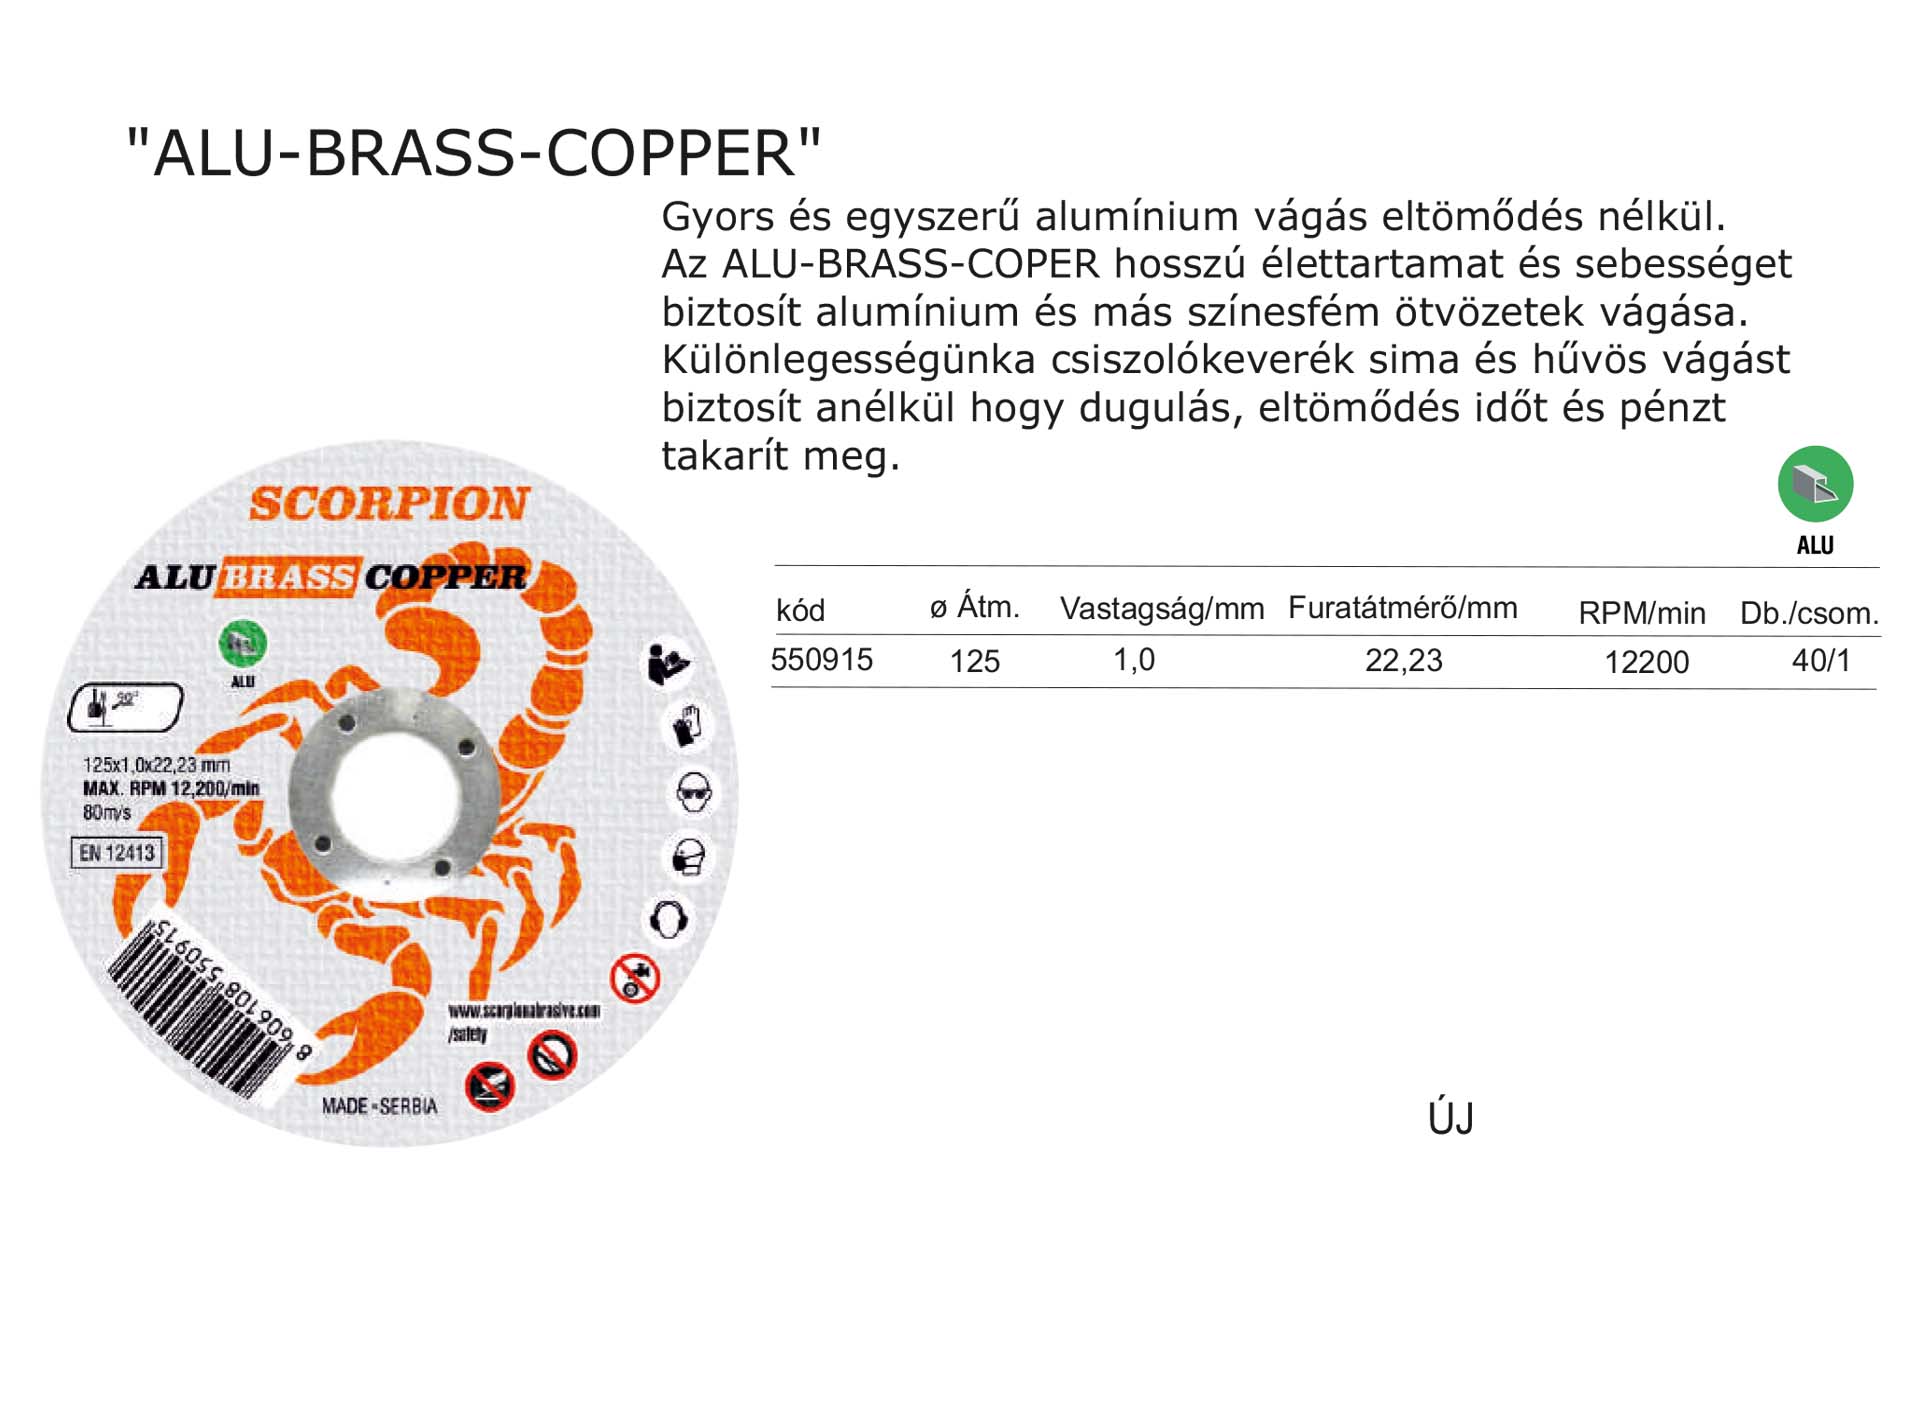 ALU-BRASS-COPPER